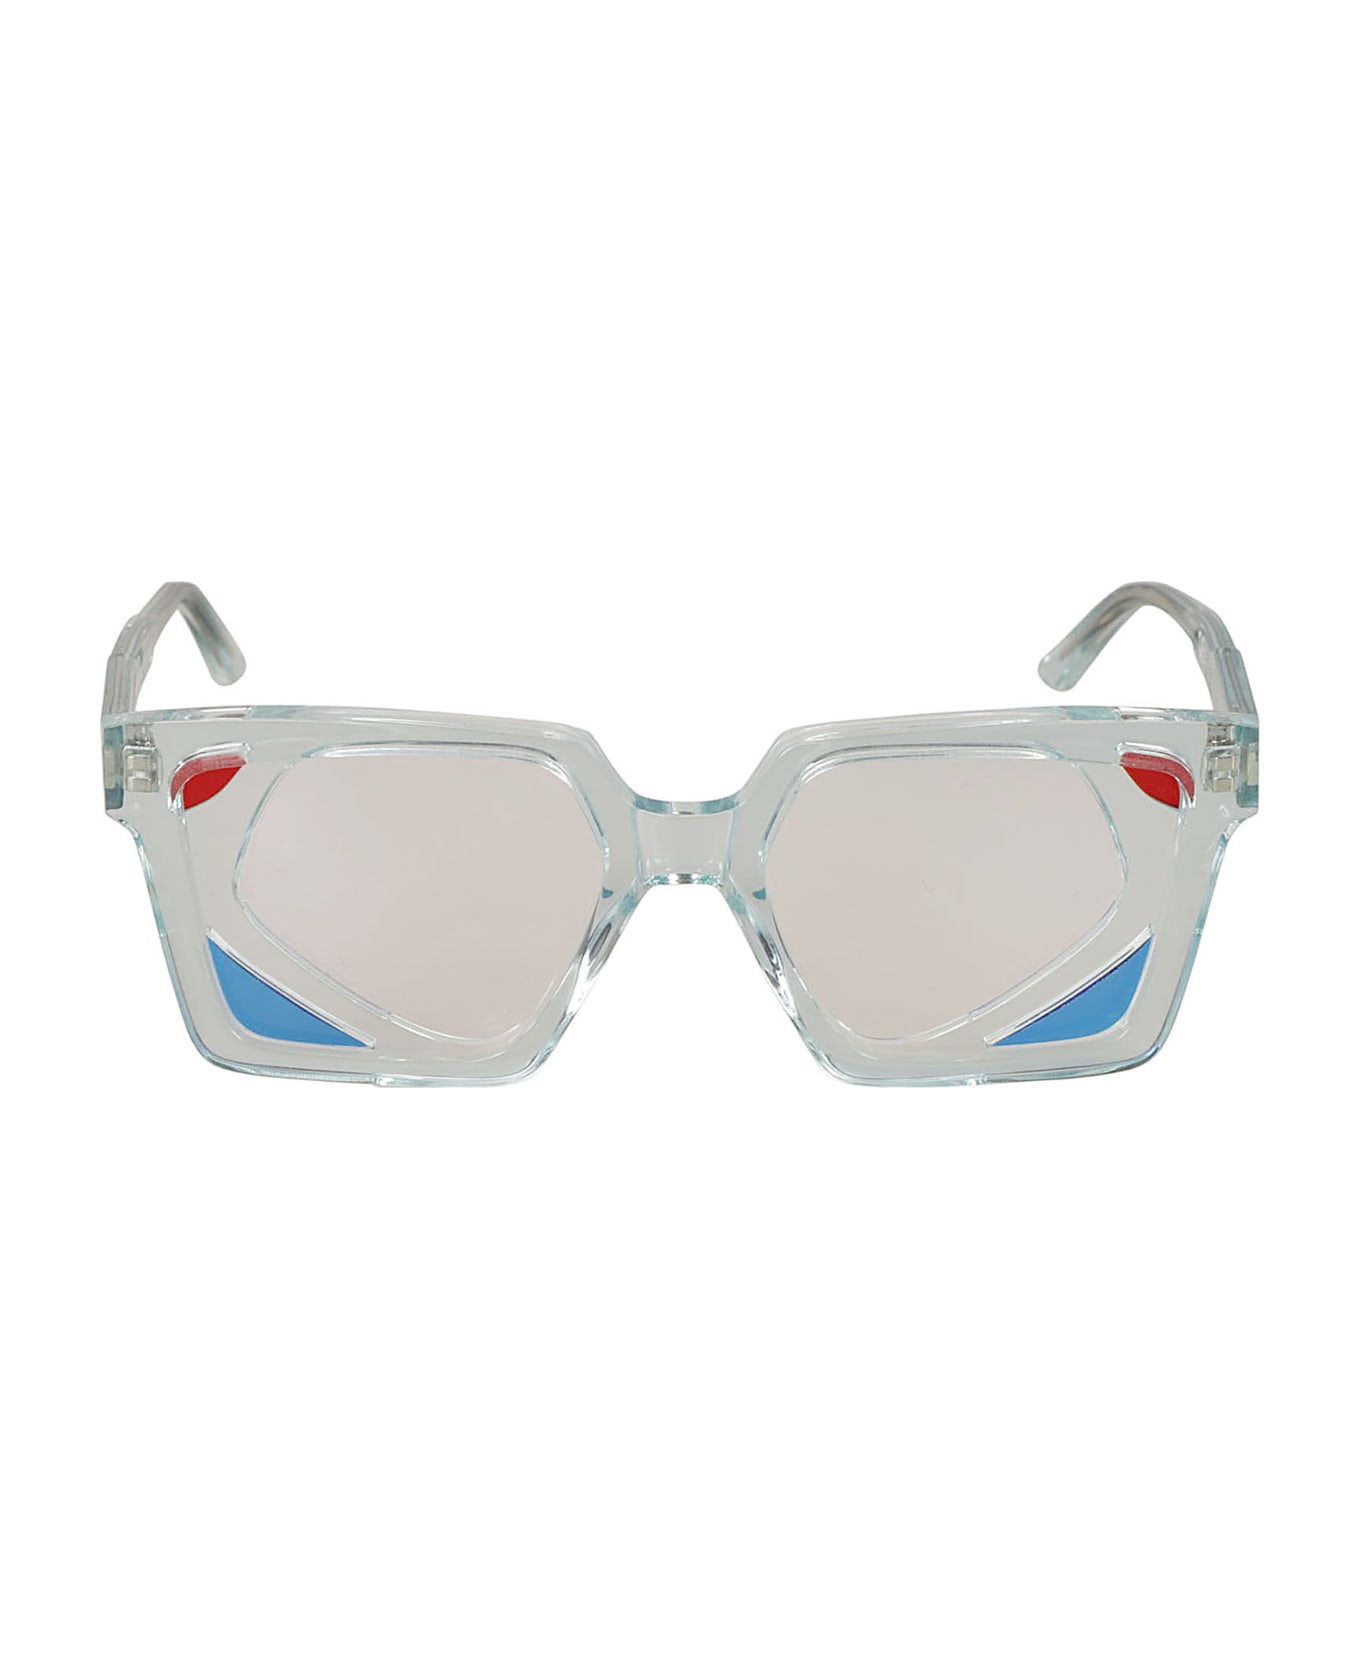 Kuboraum T6 Glasses Glasses - crystal